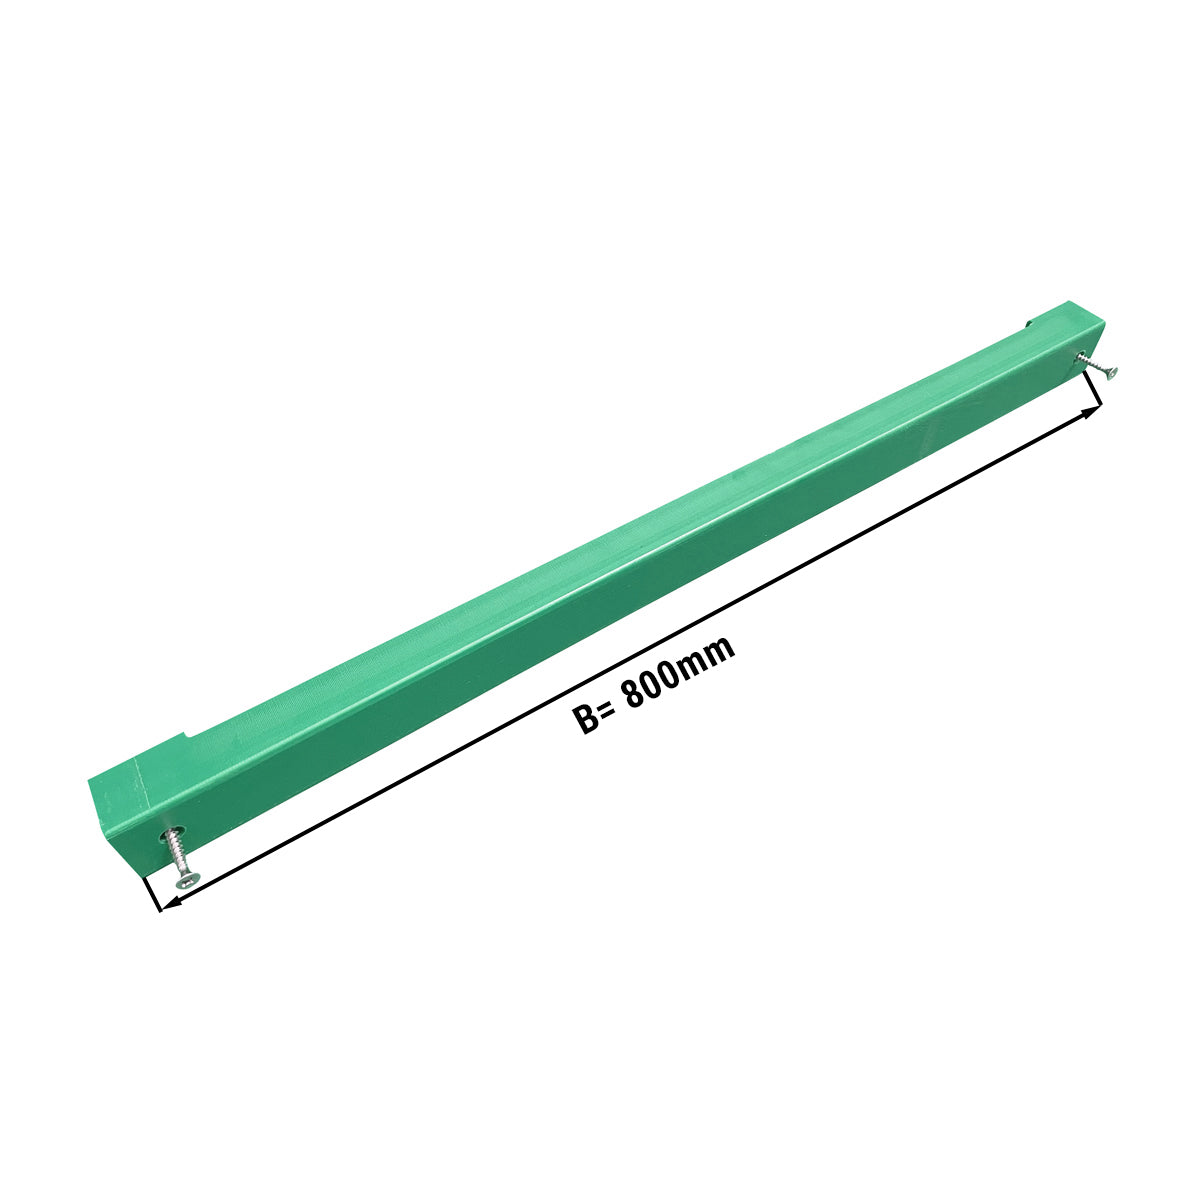 Knivholder til skjærebrett - 80 cm - grønn